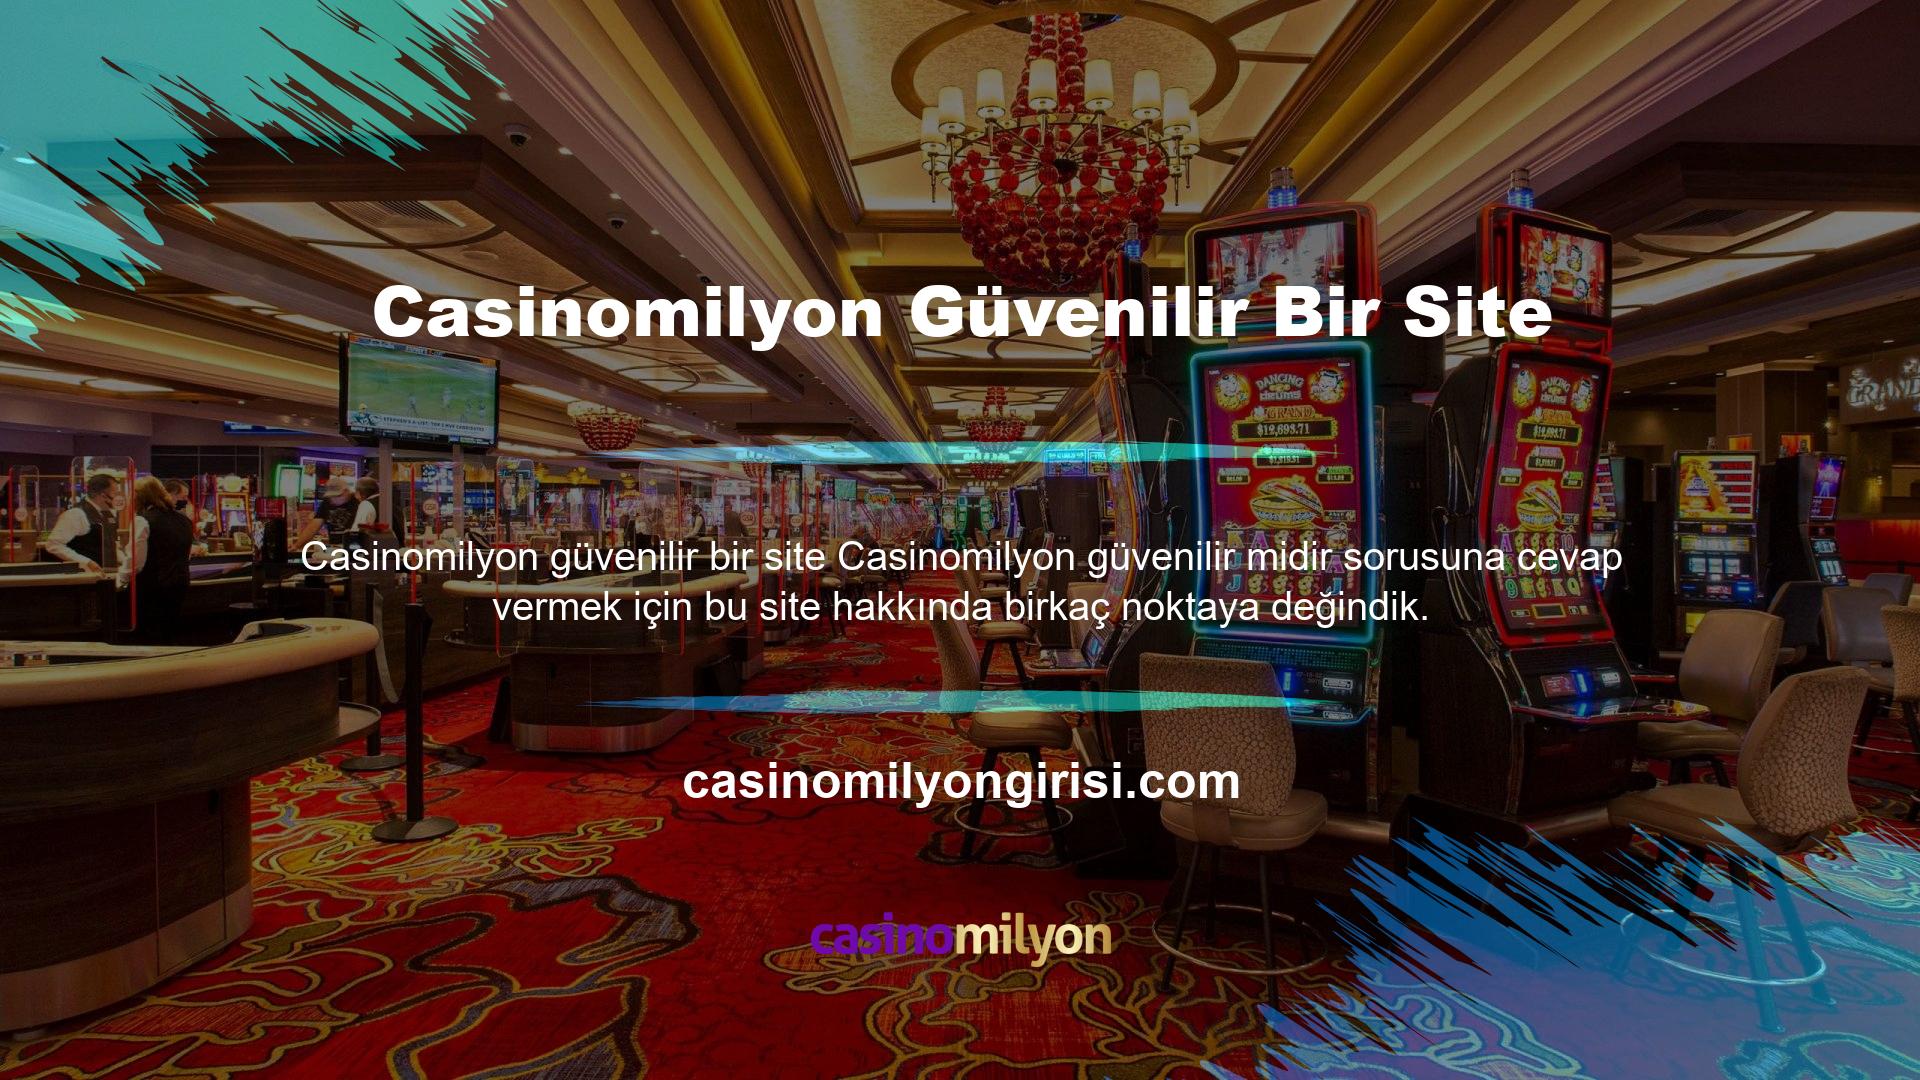 Casinomilyon Avrupa İçin Güvenilir Web Sitesi ve Casino Canlı Bahis Sitesi Midir? Birçok ülkede ünlü olan ve Türkçe, İngilizce gibi çeşitli dil seçeneklerine sahip, kaliteli bir bahis sitesidir